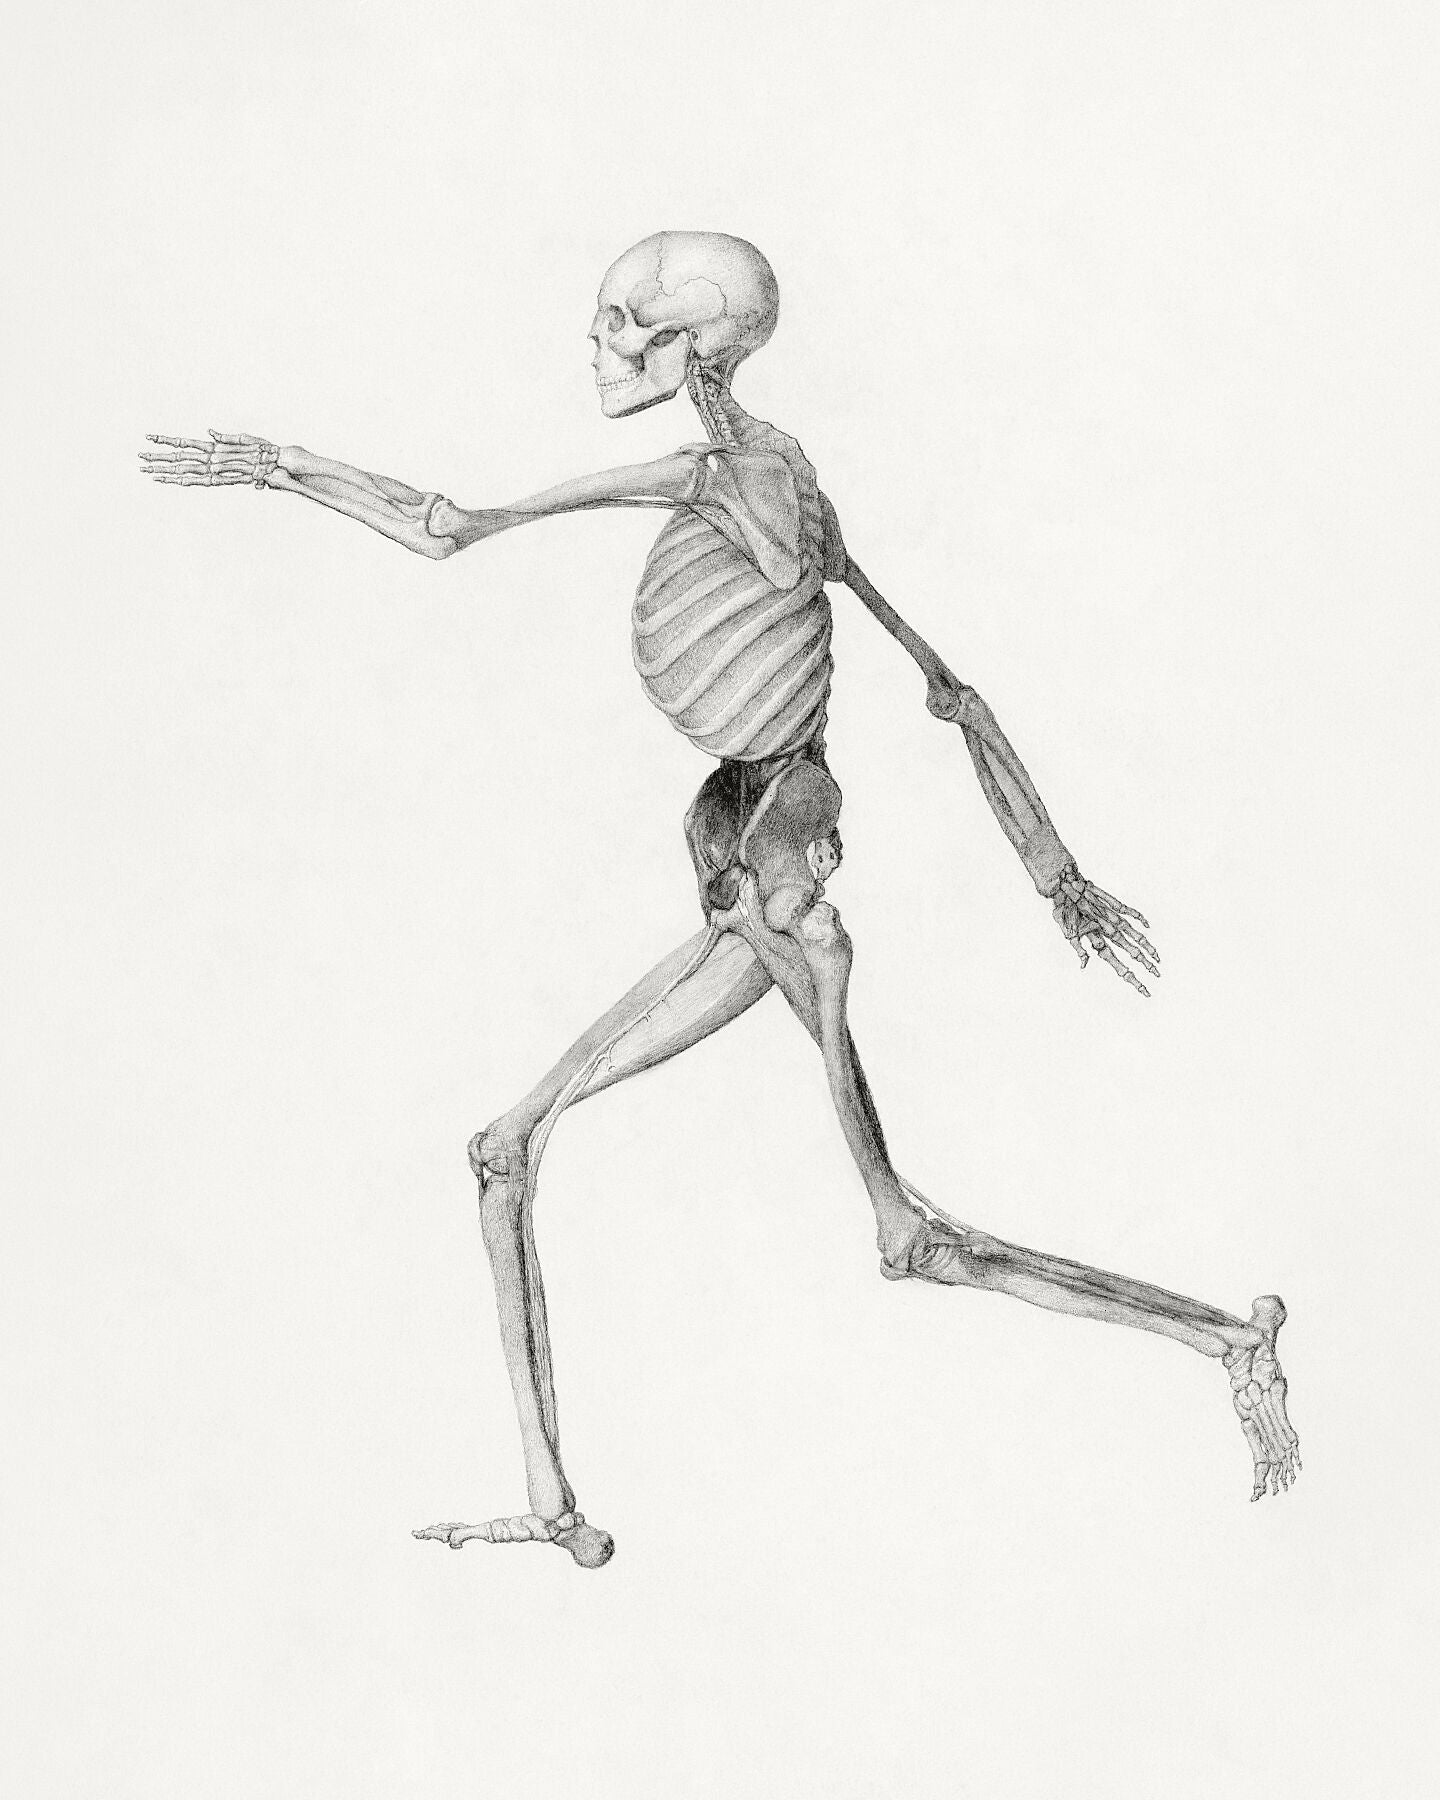 Human Skeleton by George Stubbs - c. 1795-1806